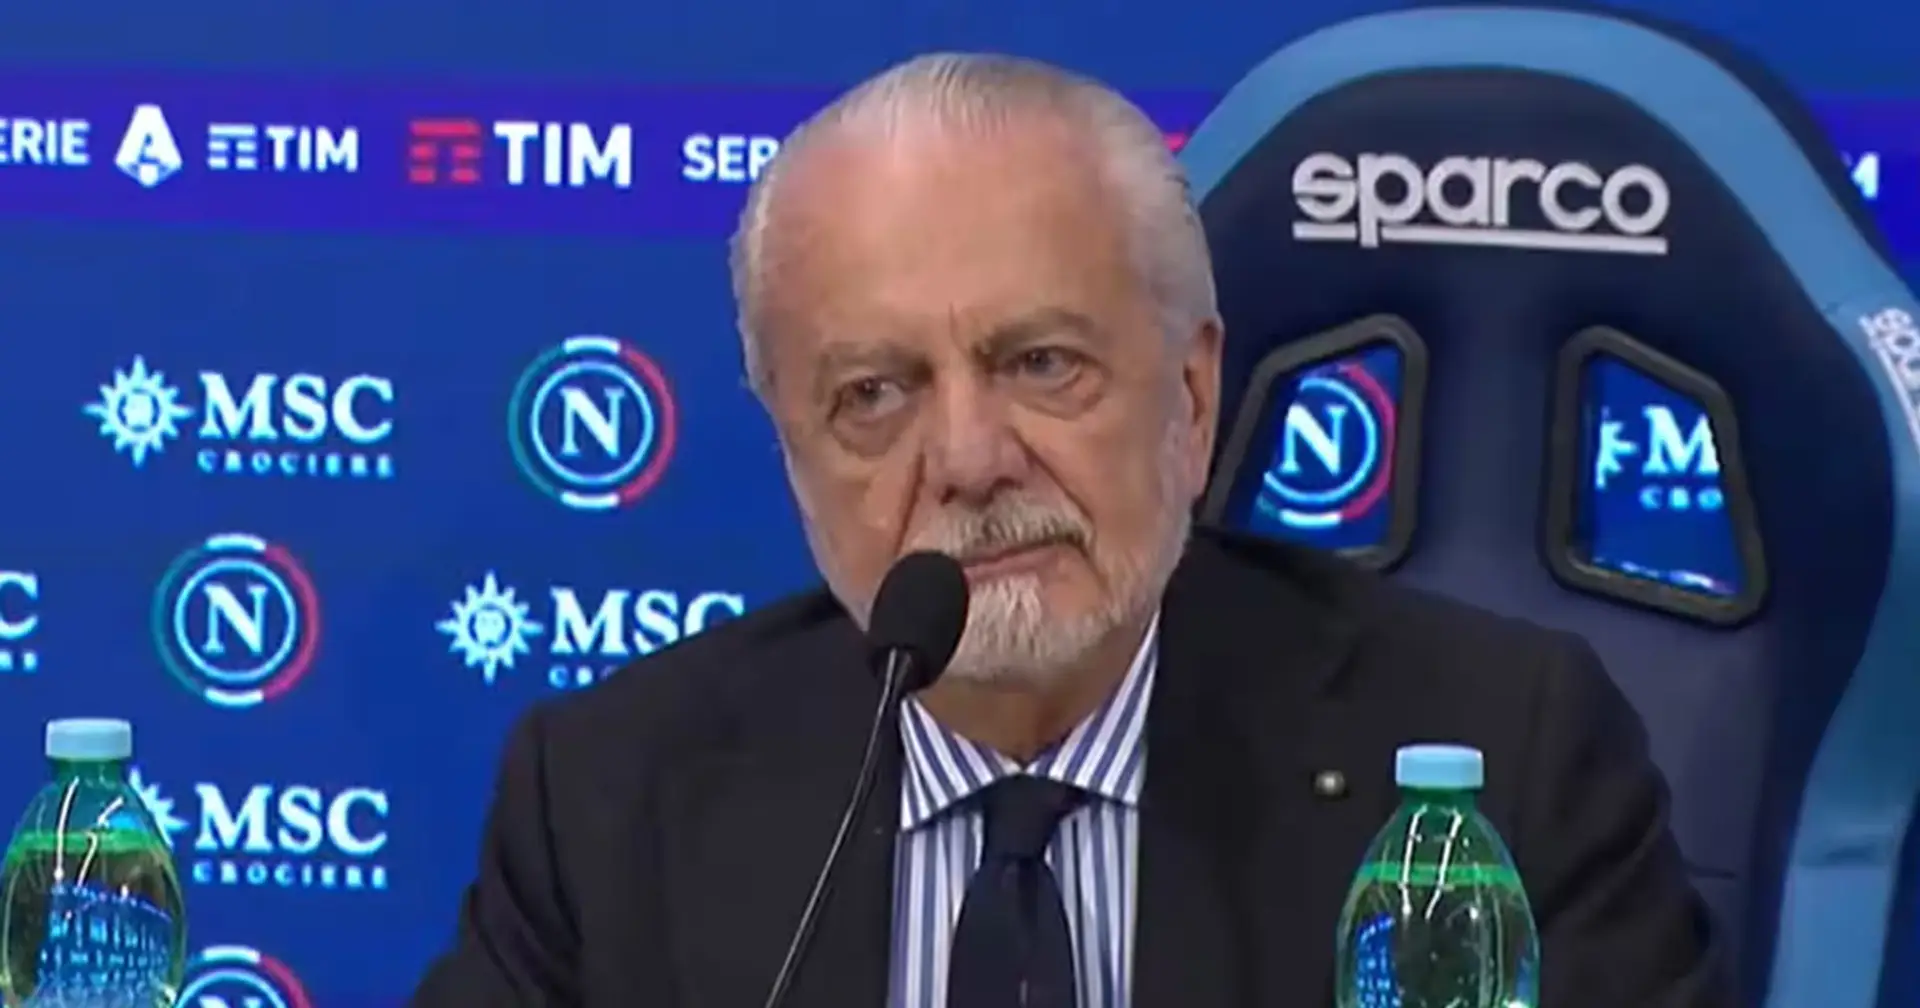 Le président de Naples assume la responsabilité de la situation désastreuse des Azzurri : "J'assume la responsabilité"